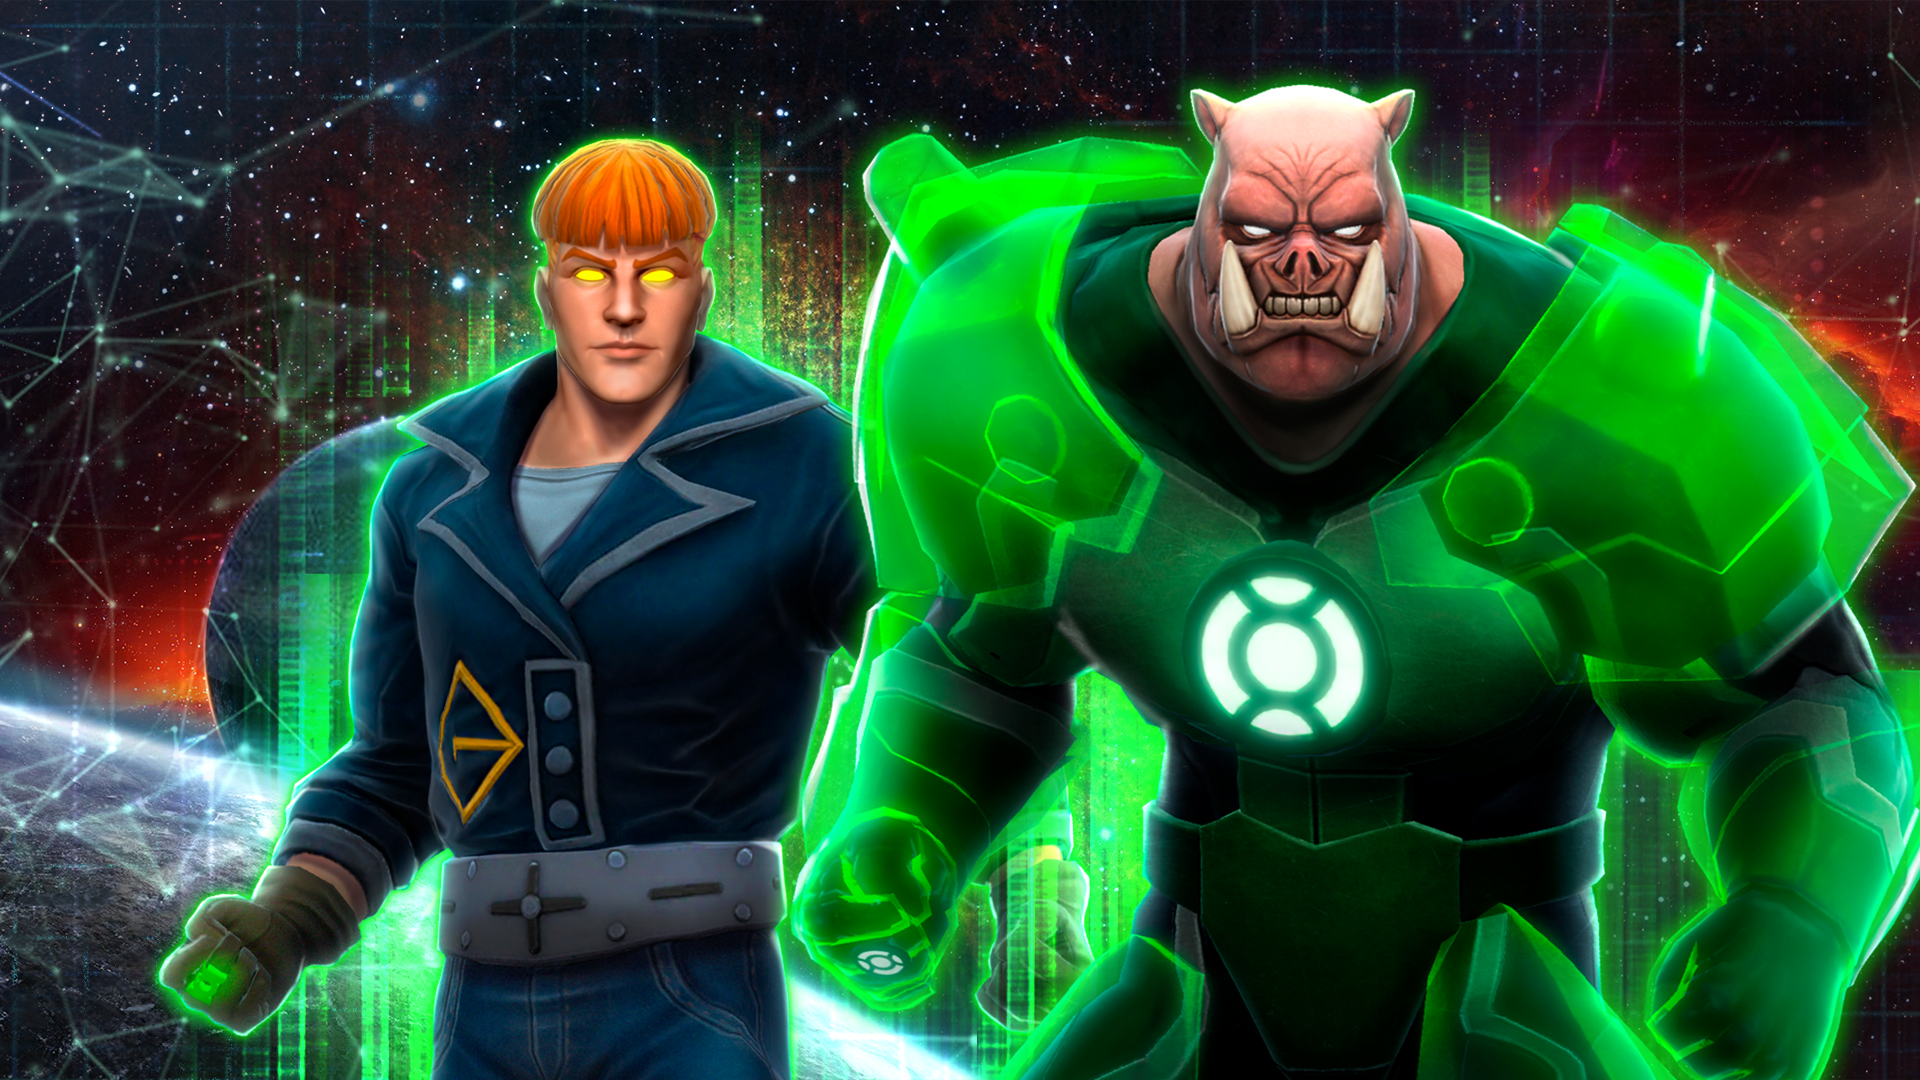 Kilowog and Guy Gardner join DC Legends!